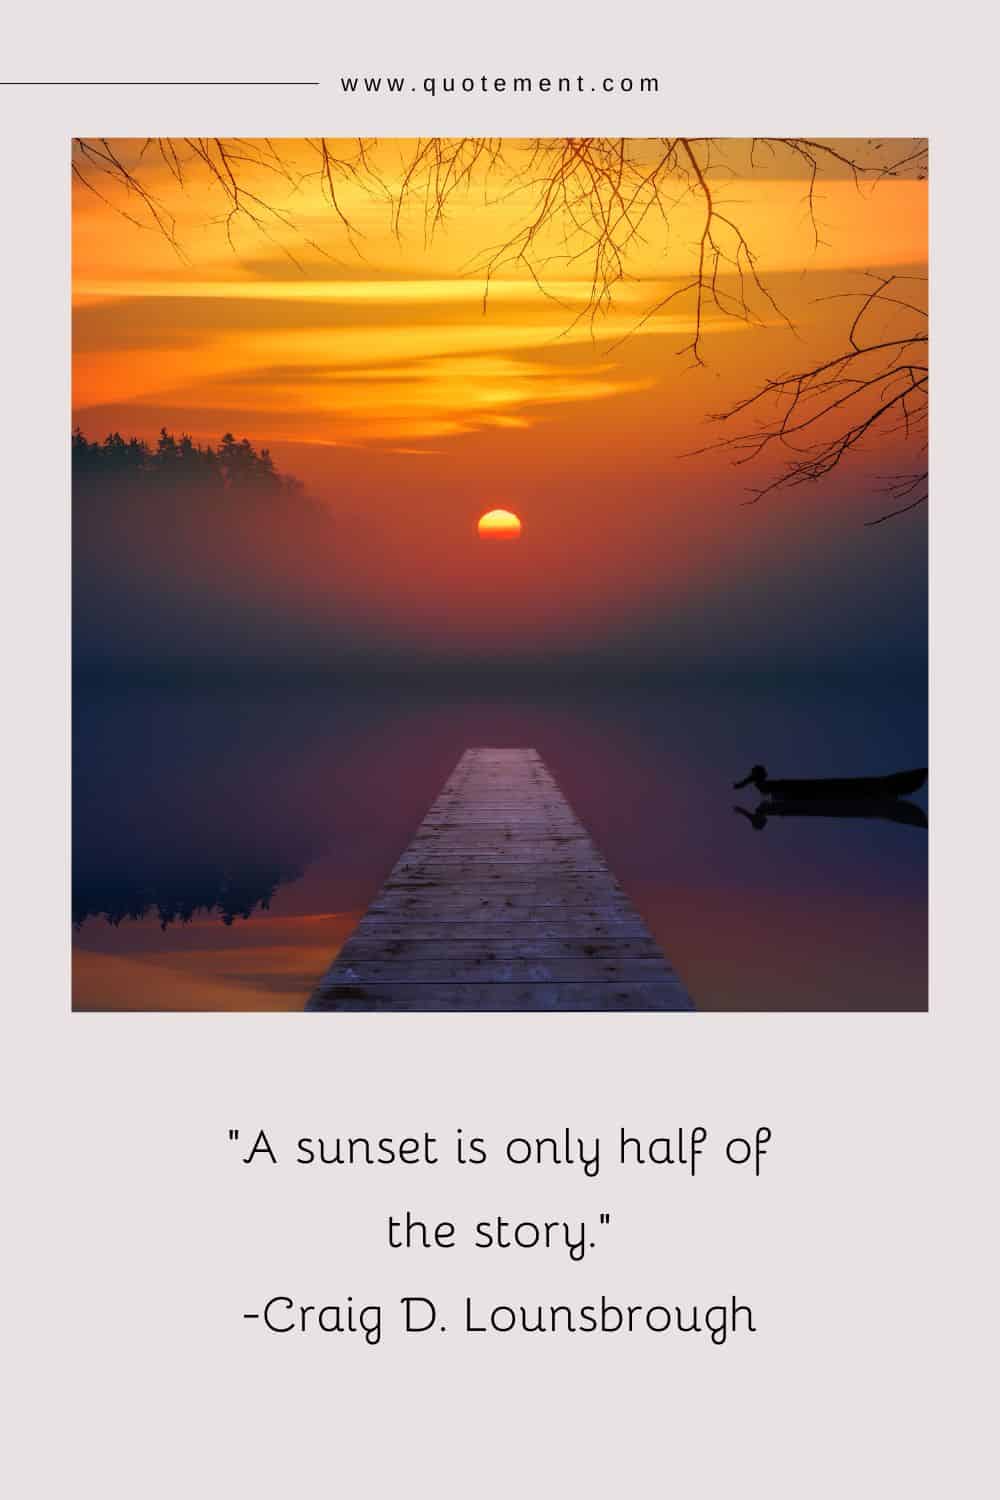 Una puesta de sol es sólo la mitad de la historia